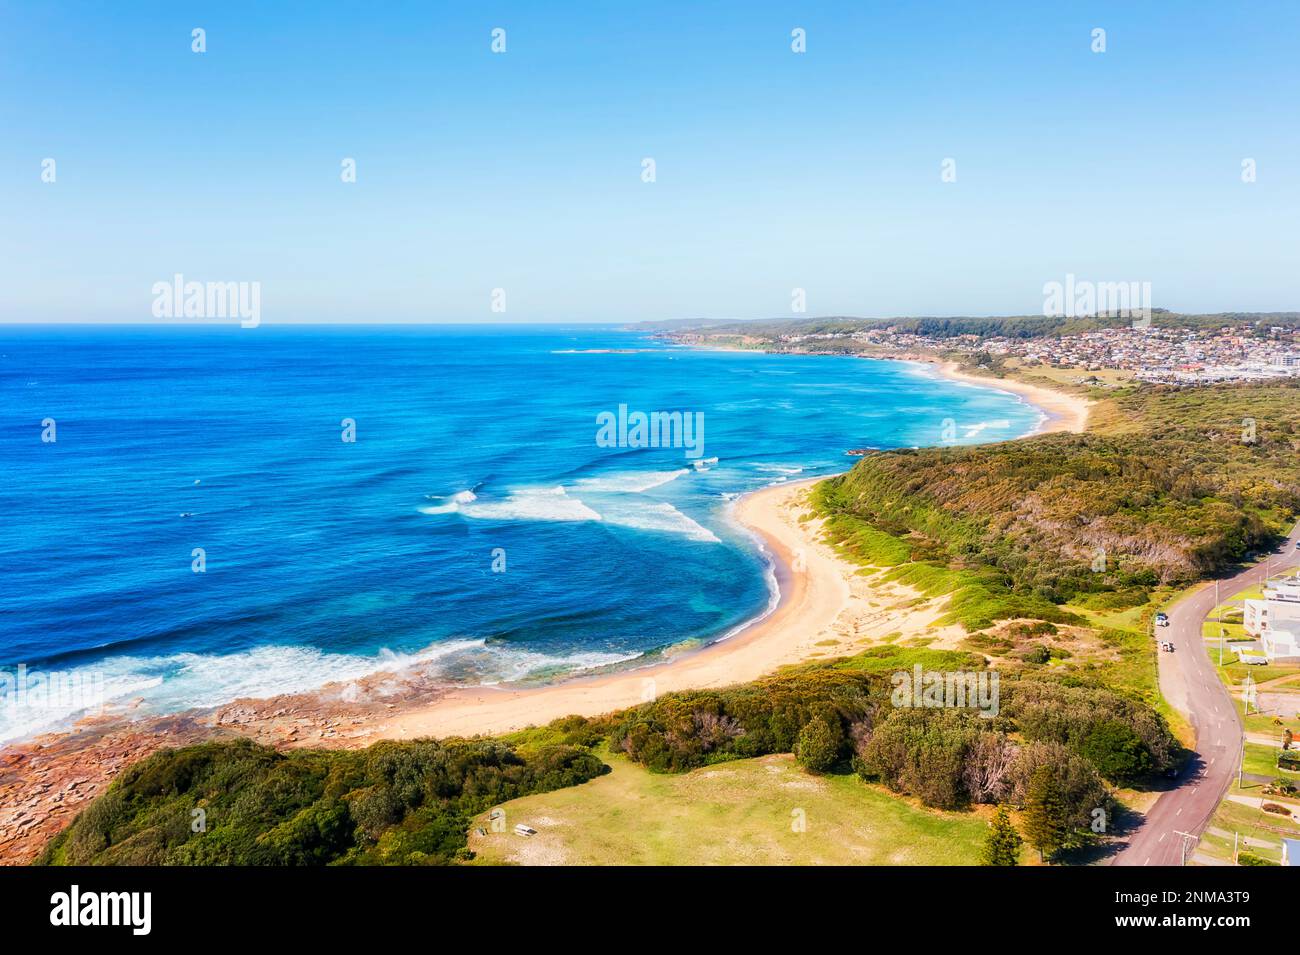 Spiaggia di prosciutti nella città di spiaggia di Caves sulla costa del Pacifico dell'Australia - scenia mare aereo. Foto Stock